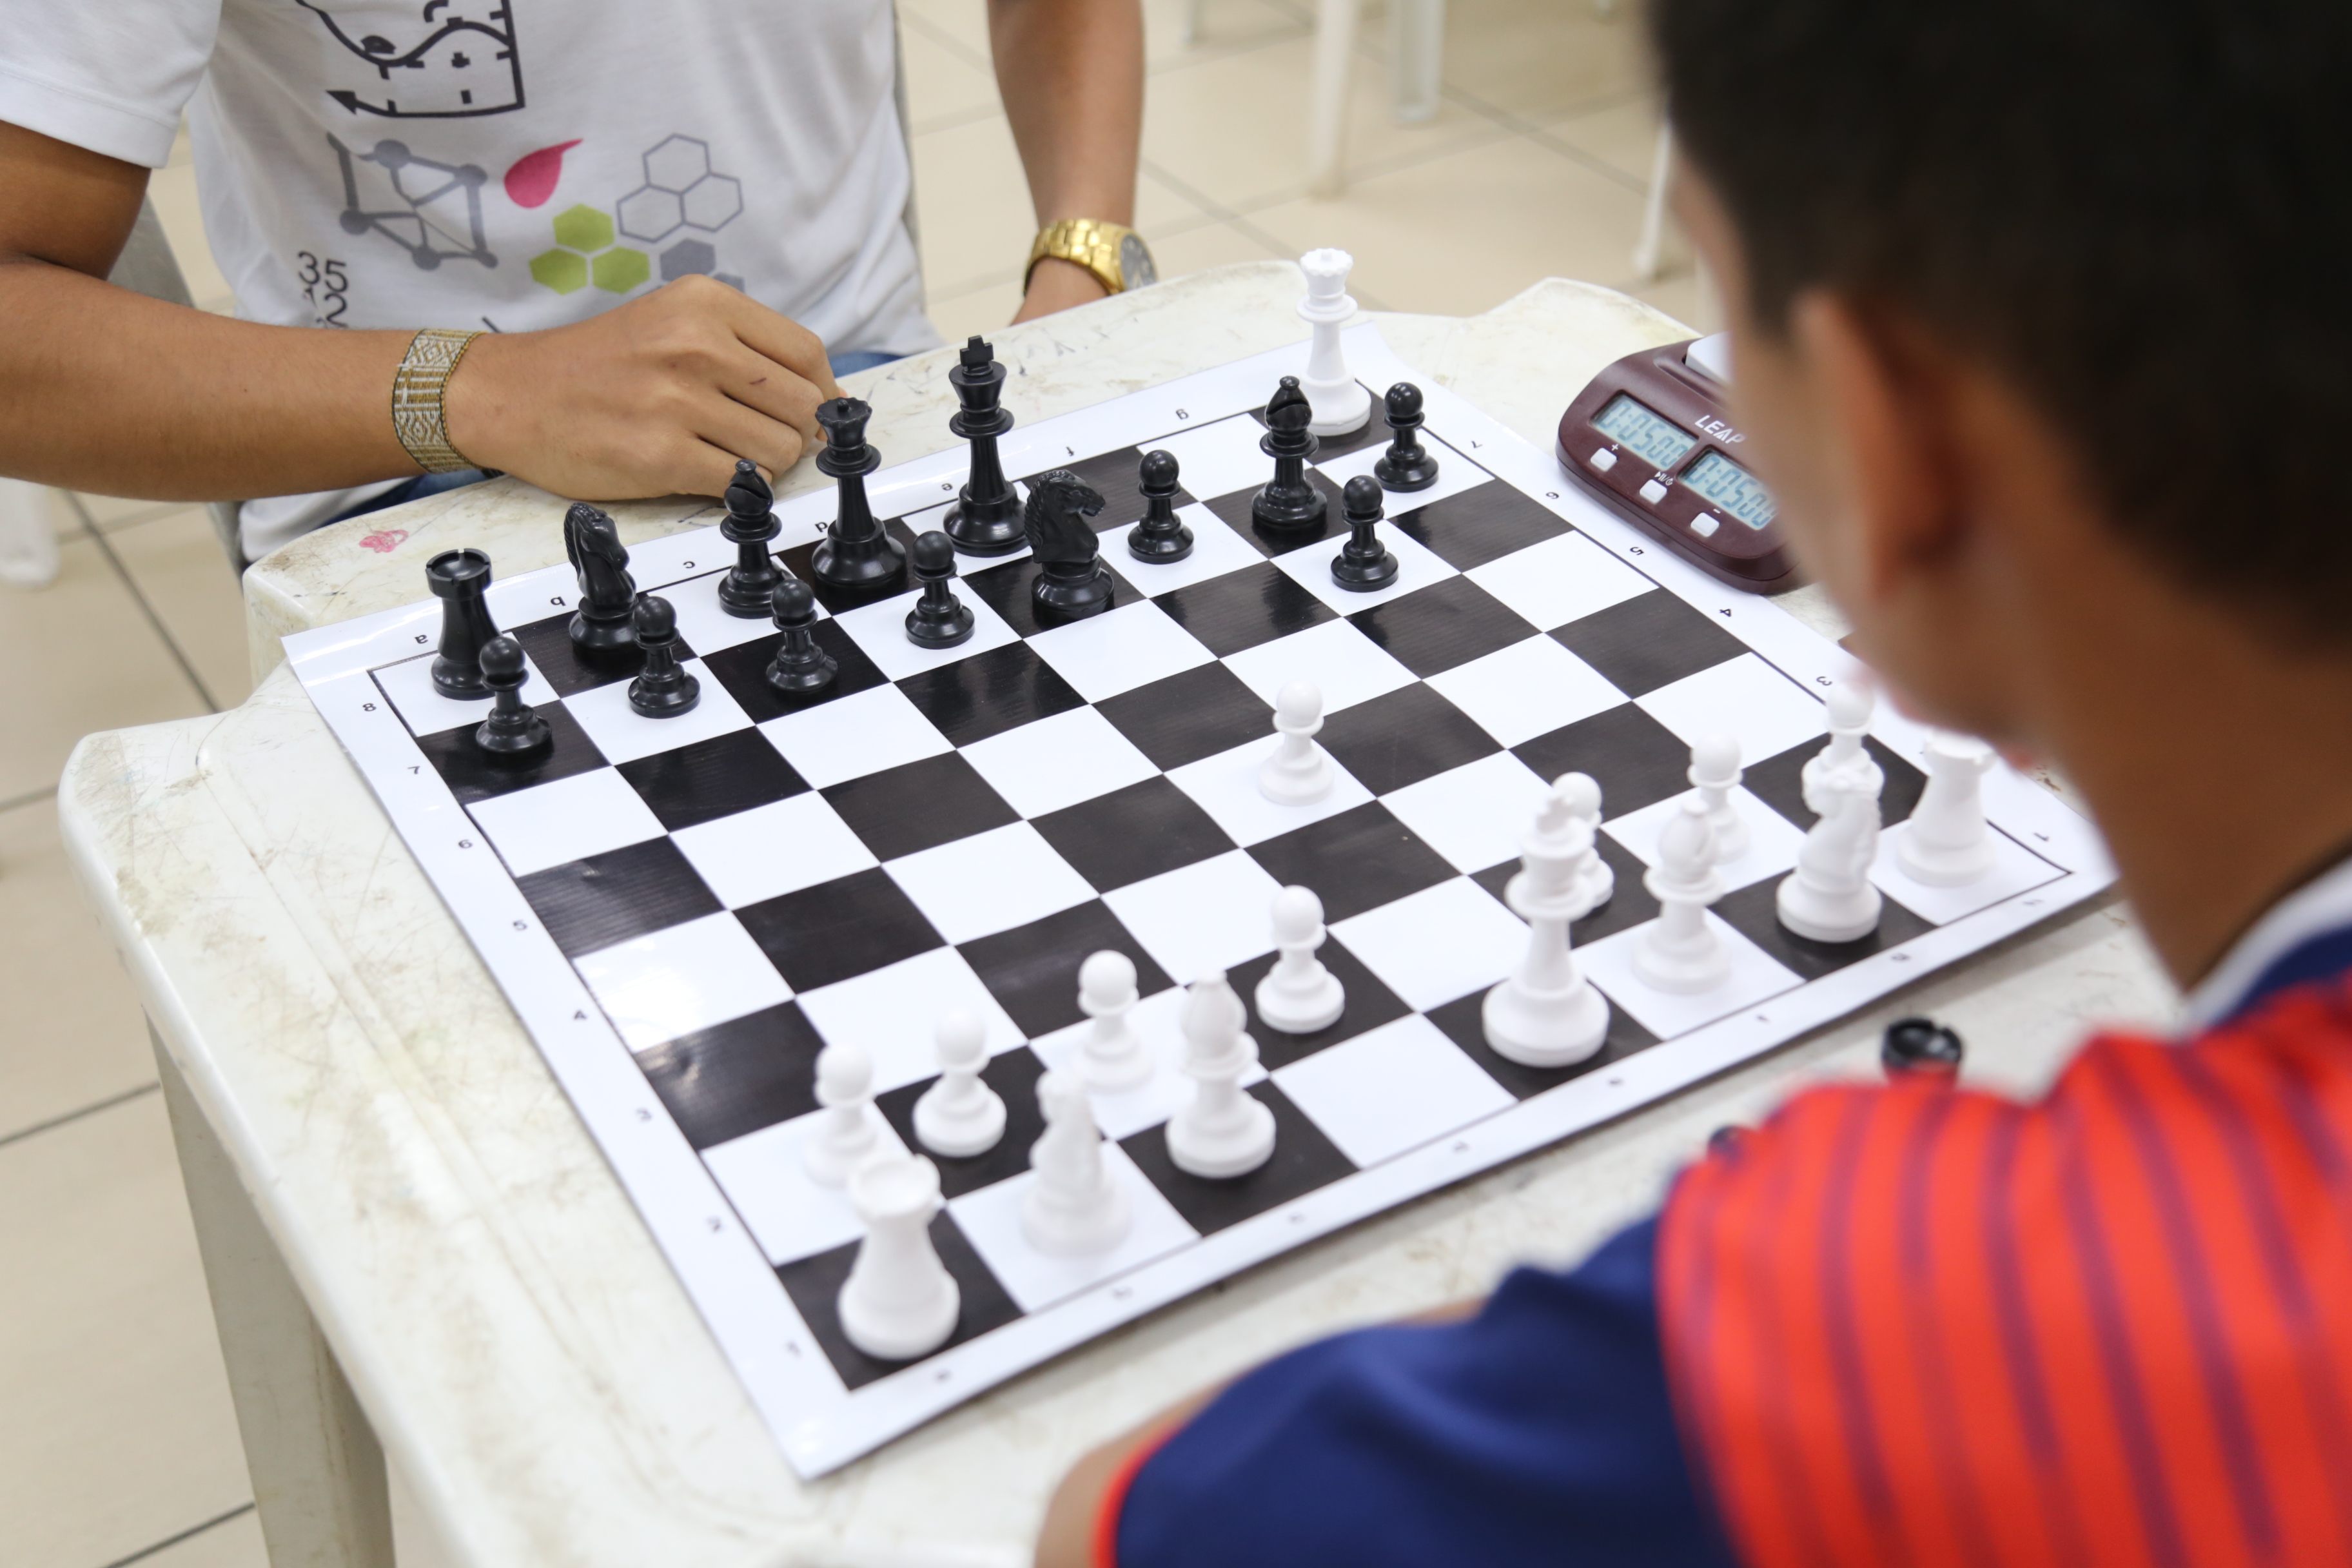 ARAPIRACA - Escola de Arapiraca adota prática de xadrez como ferramenta de  aprendizado e realiza primeiro torneio interno com sucesso